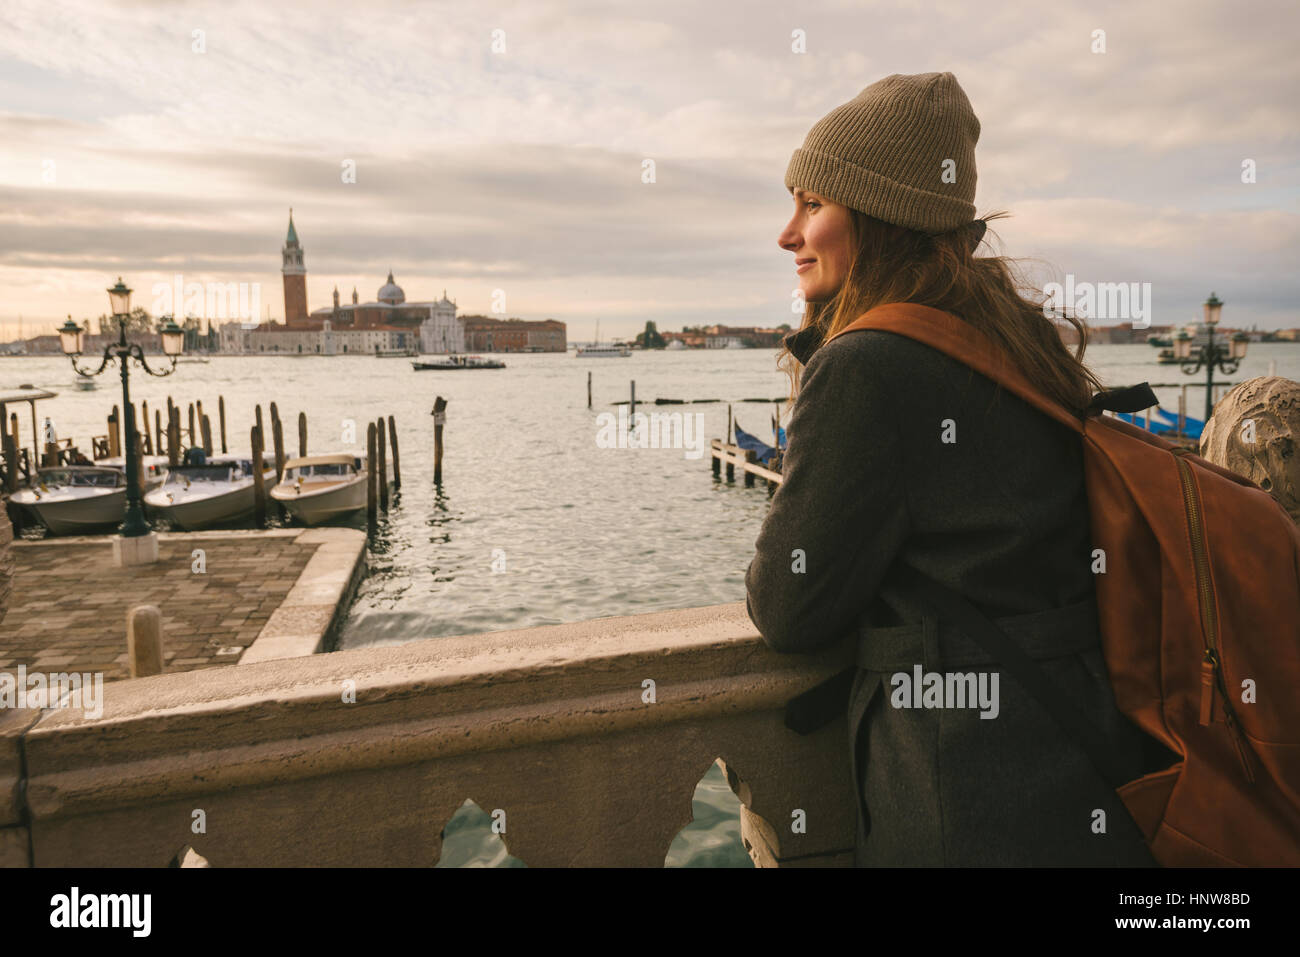 Woman on bridge in Grand Canal, San Giorgio Maggiore Island in background, Venice, Italy Stock Photo